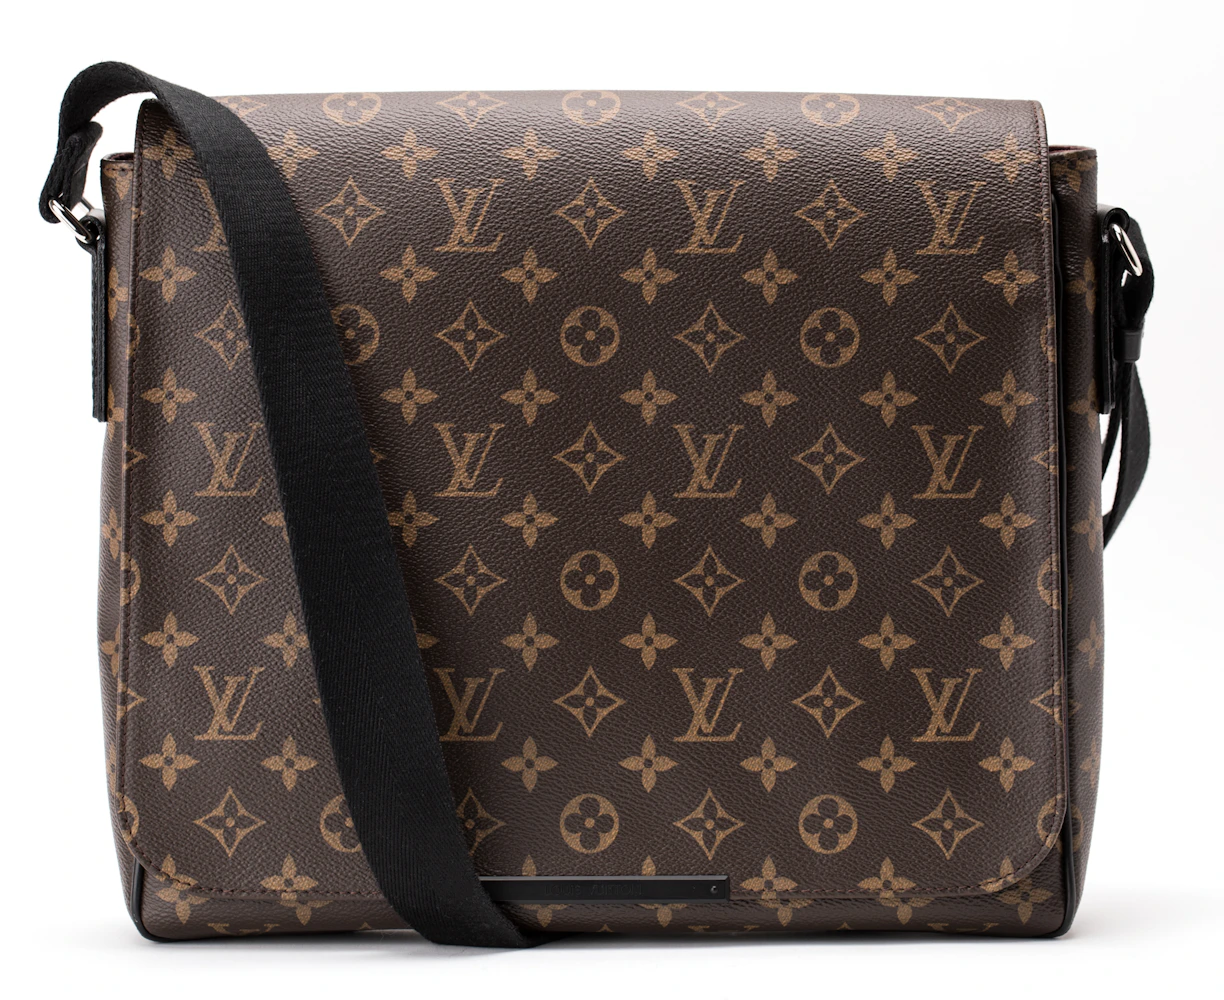 Louis Vuitton District PM Monogram Messenger Bag on SALE